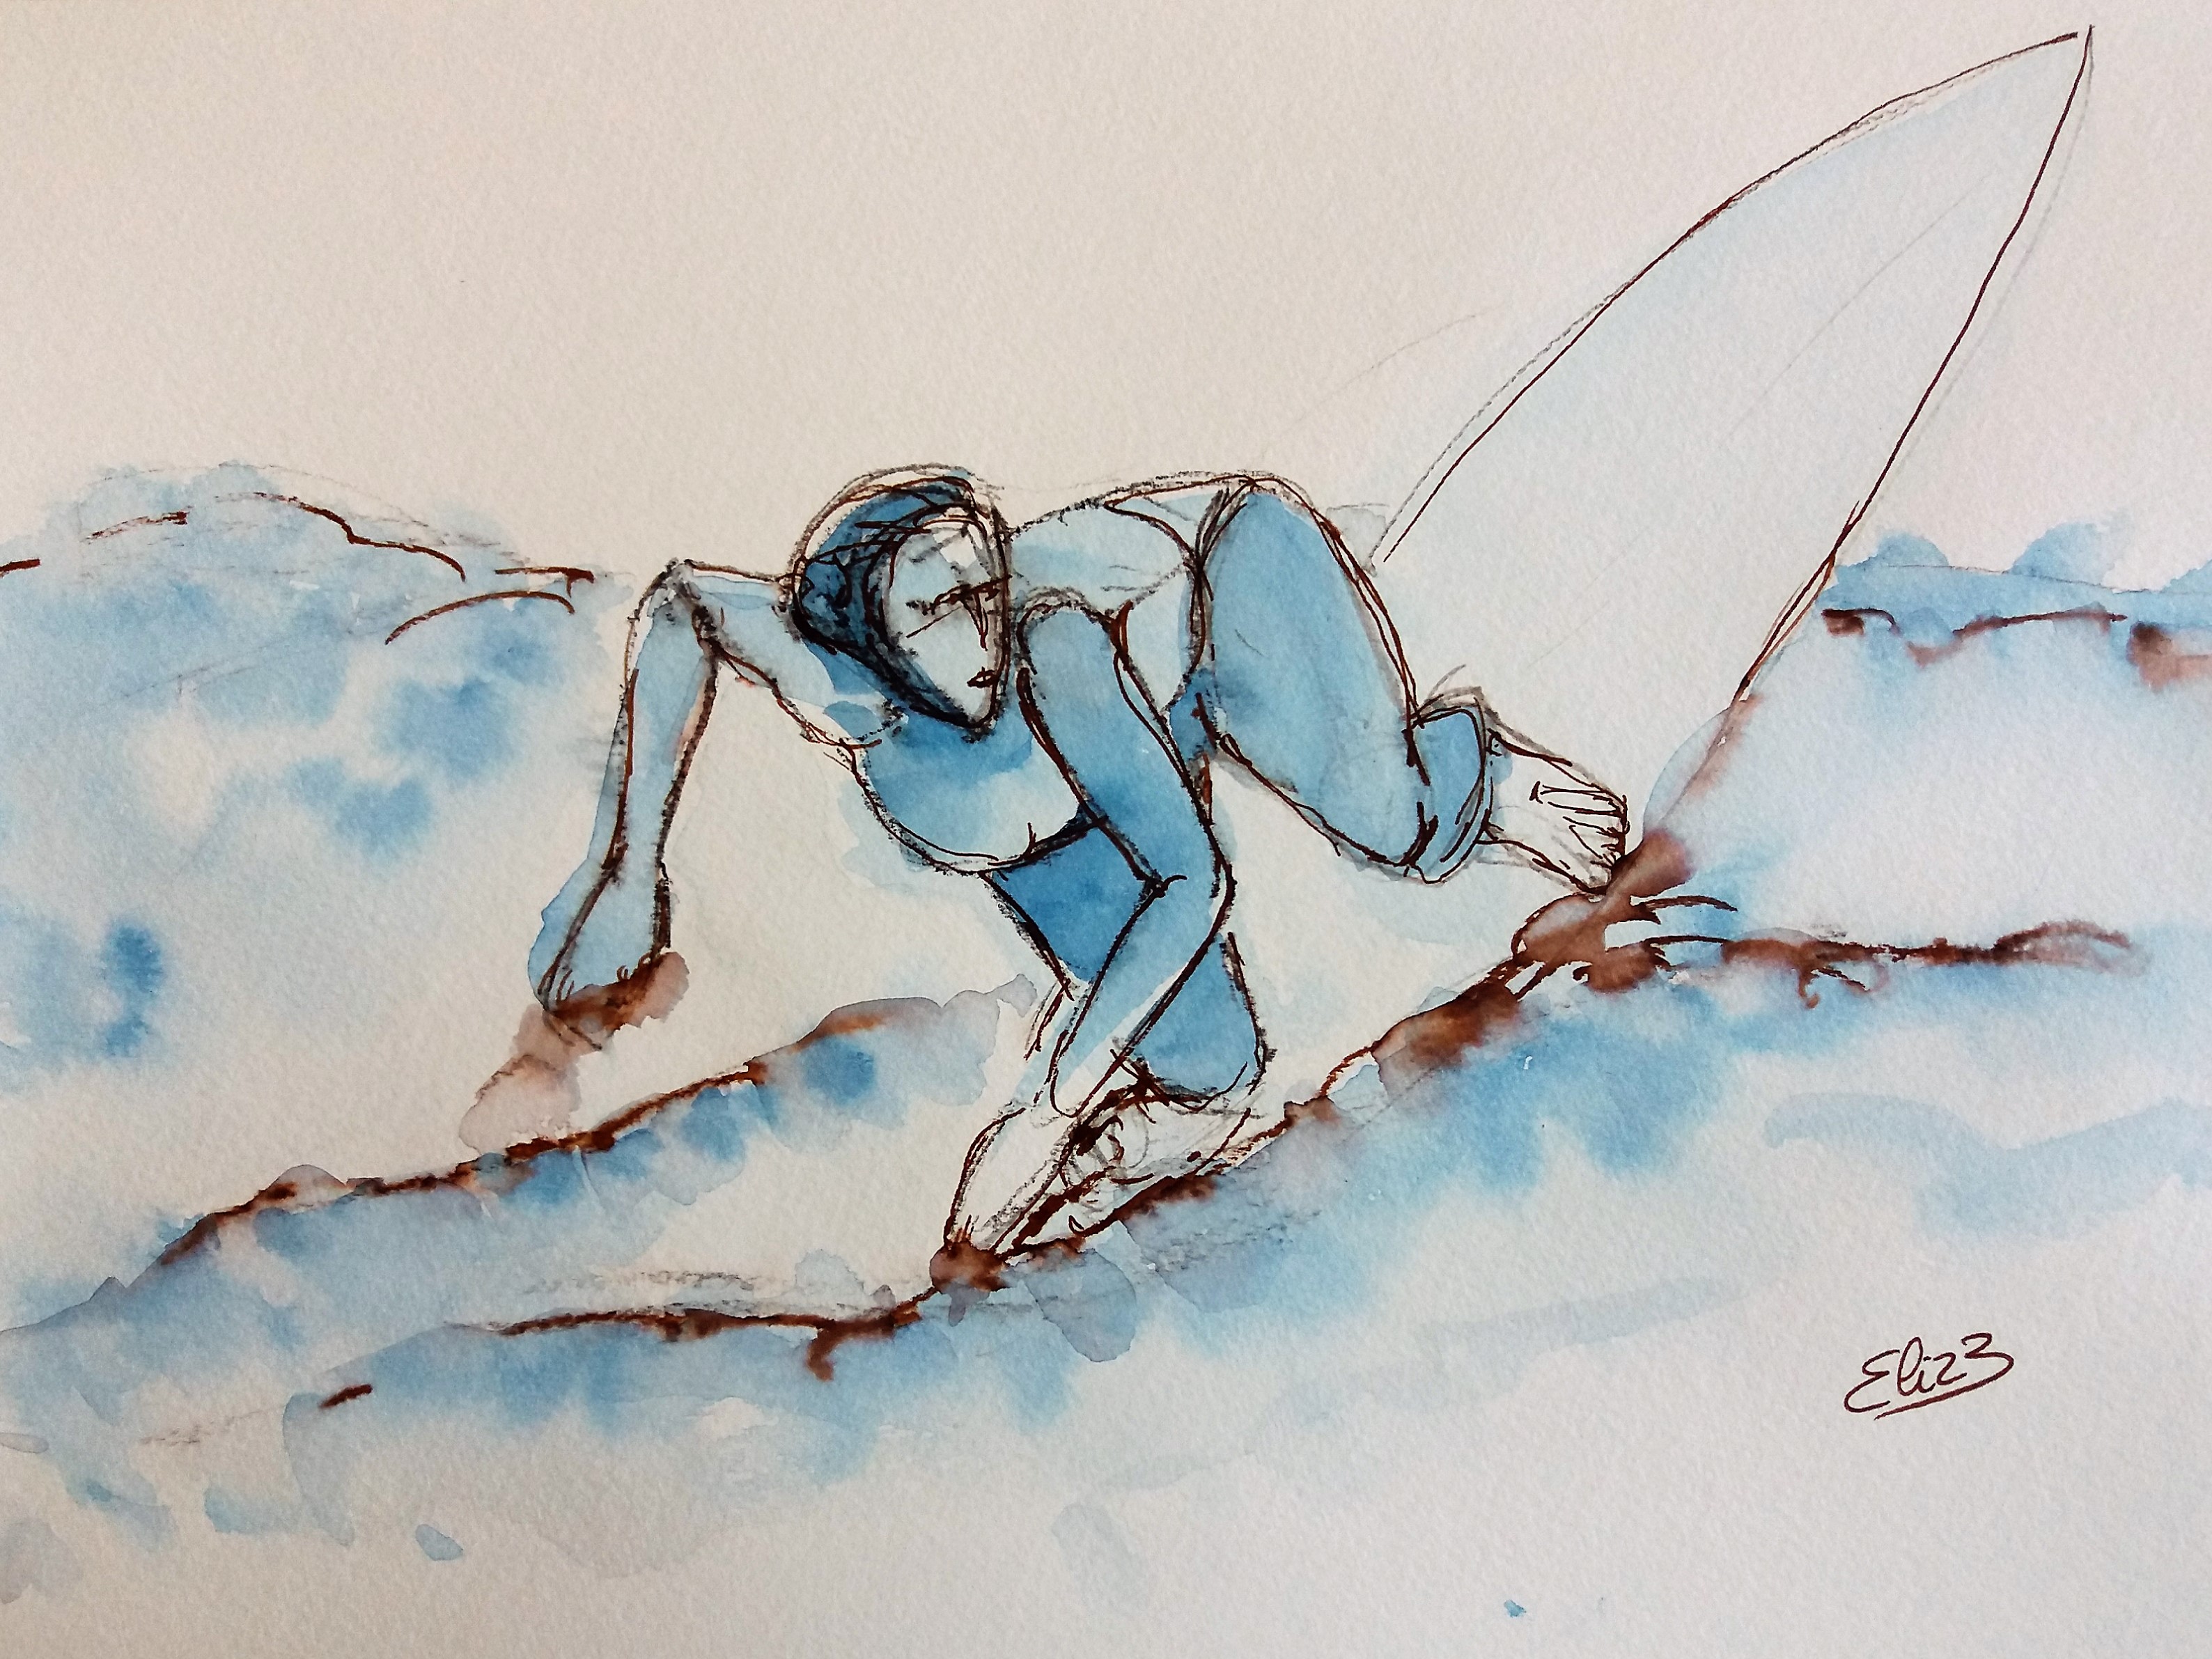 surfer sur la vague rouleau surfeuse sur la plage, dessin esquisse par elize pour pigmentropie encre bleu et trait marron